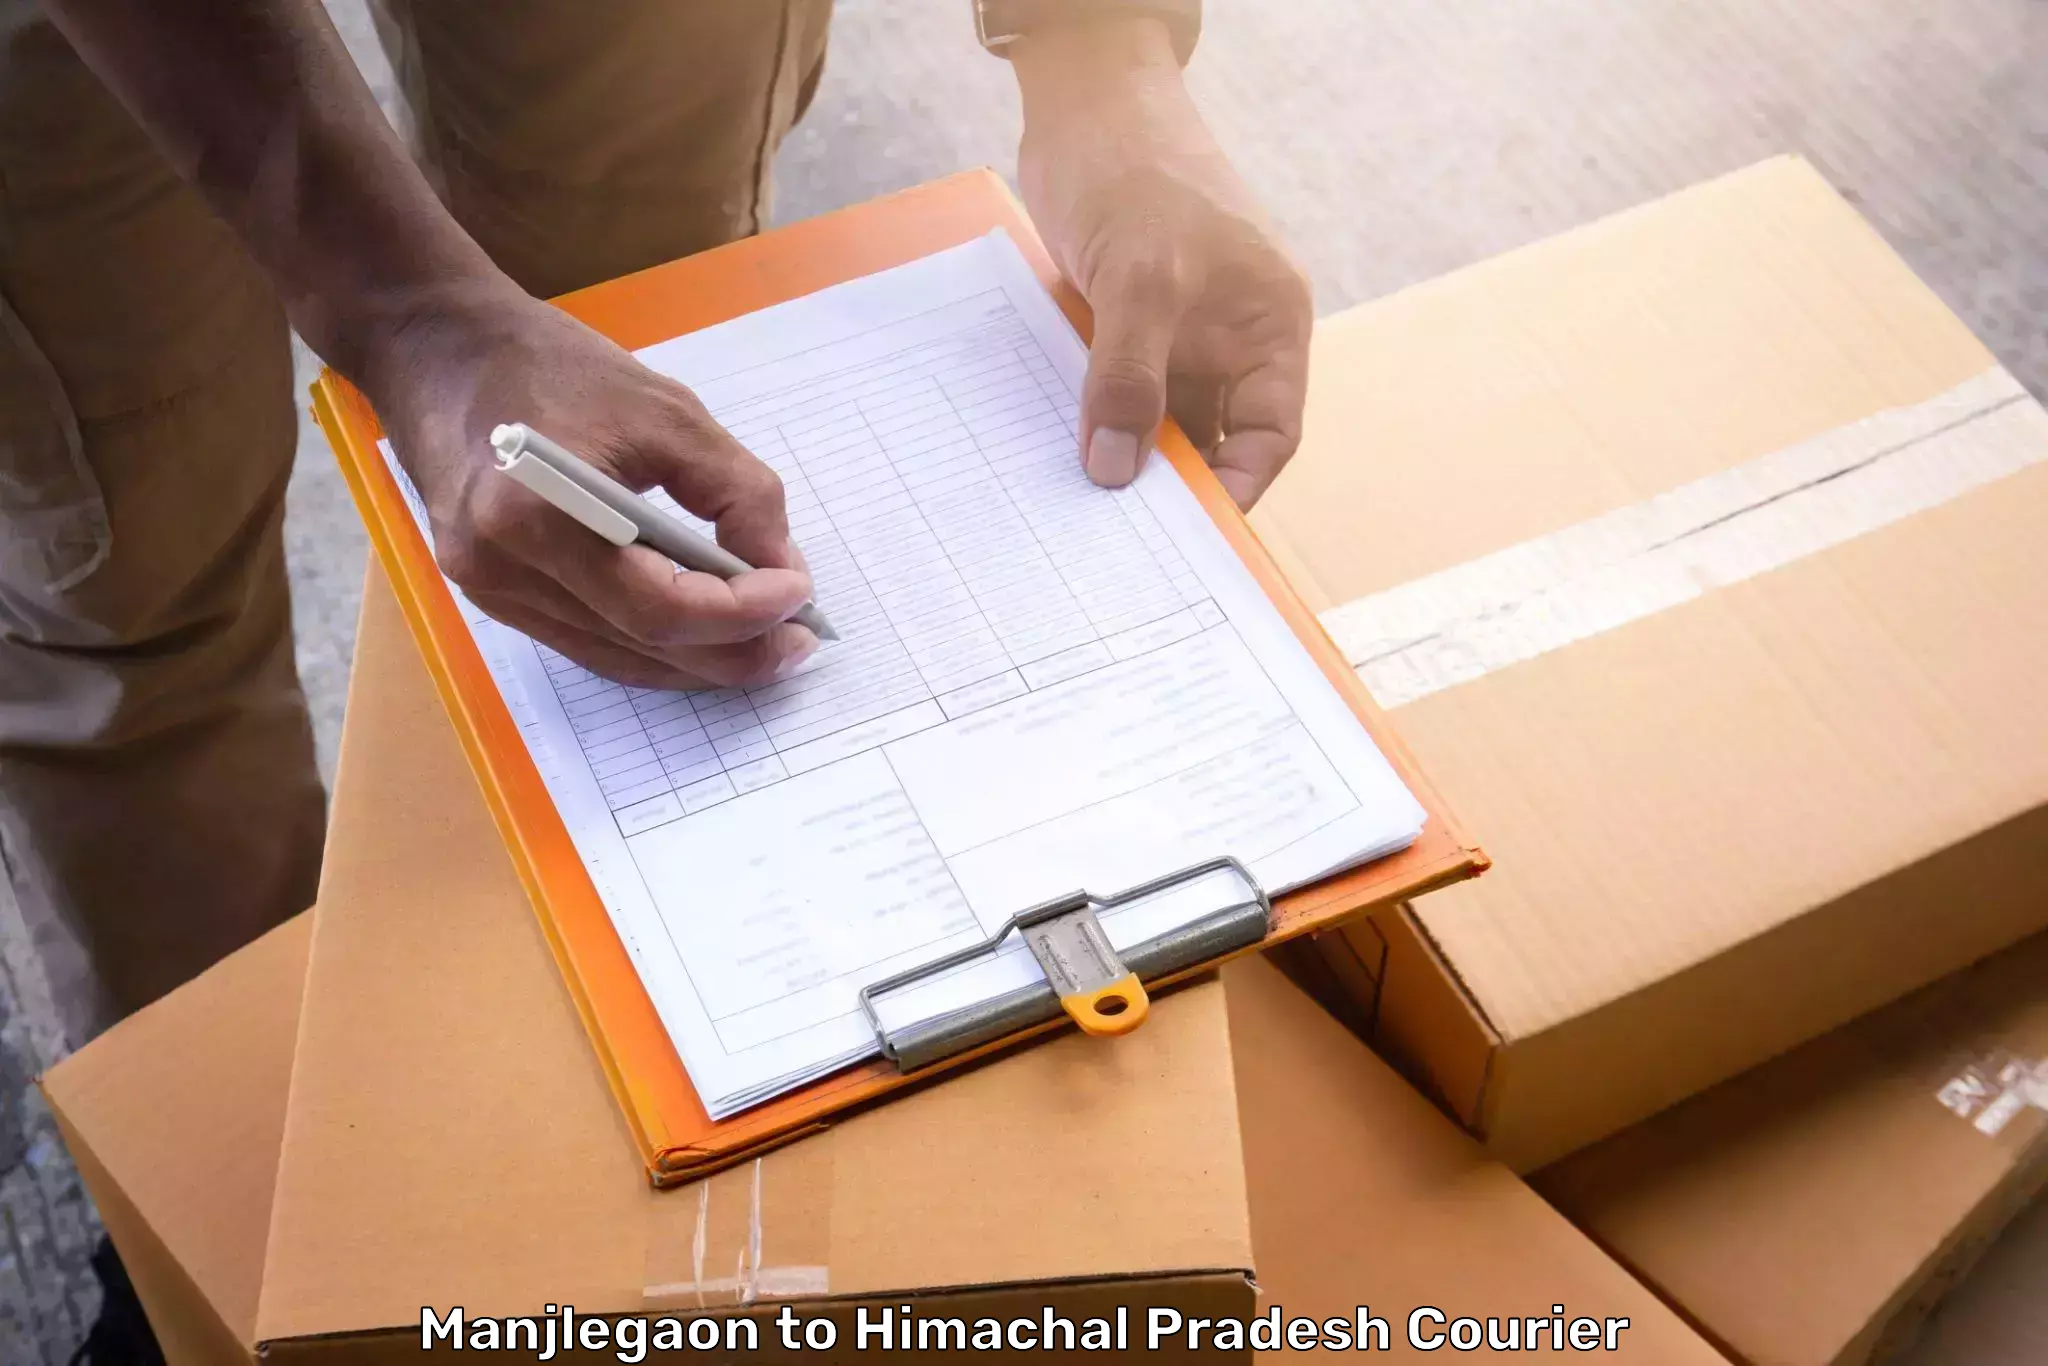 Baggage courier optimization Manjlegaon to Himachal Pradesh